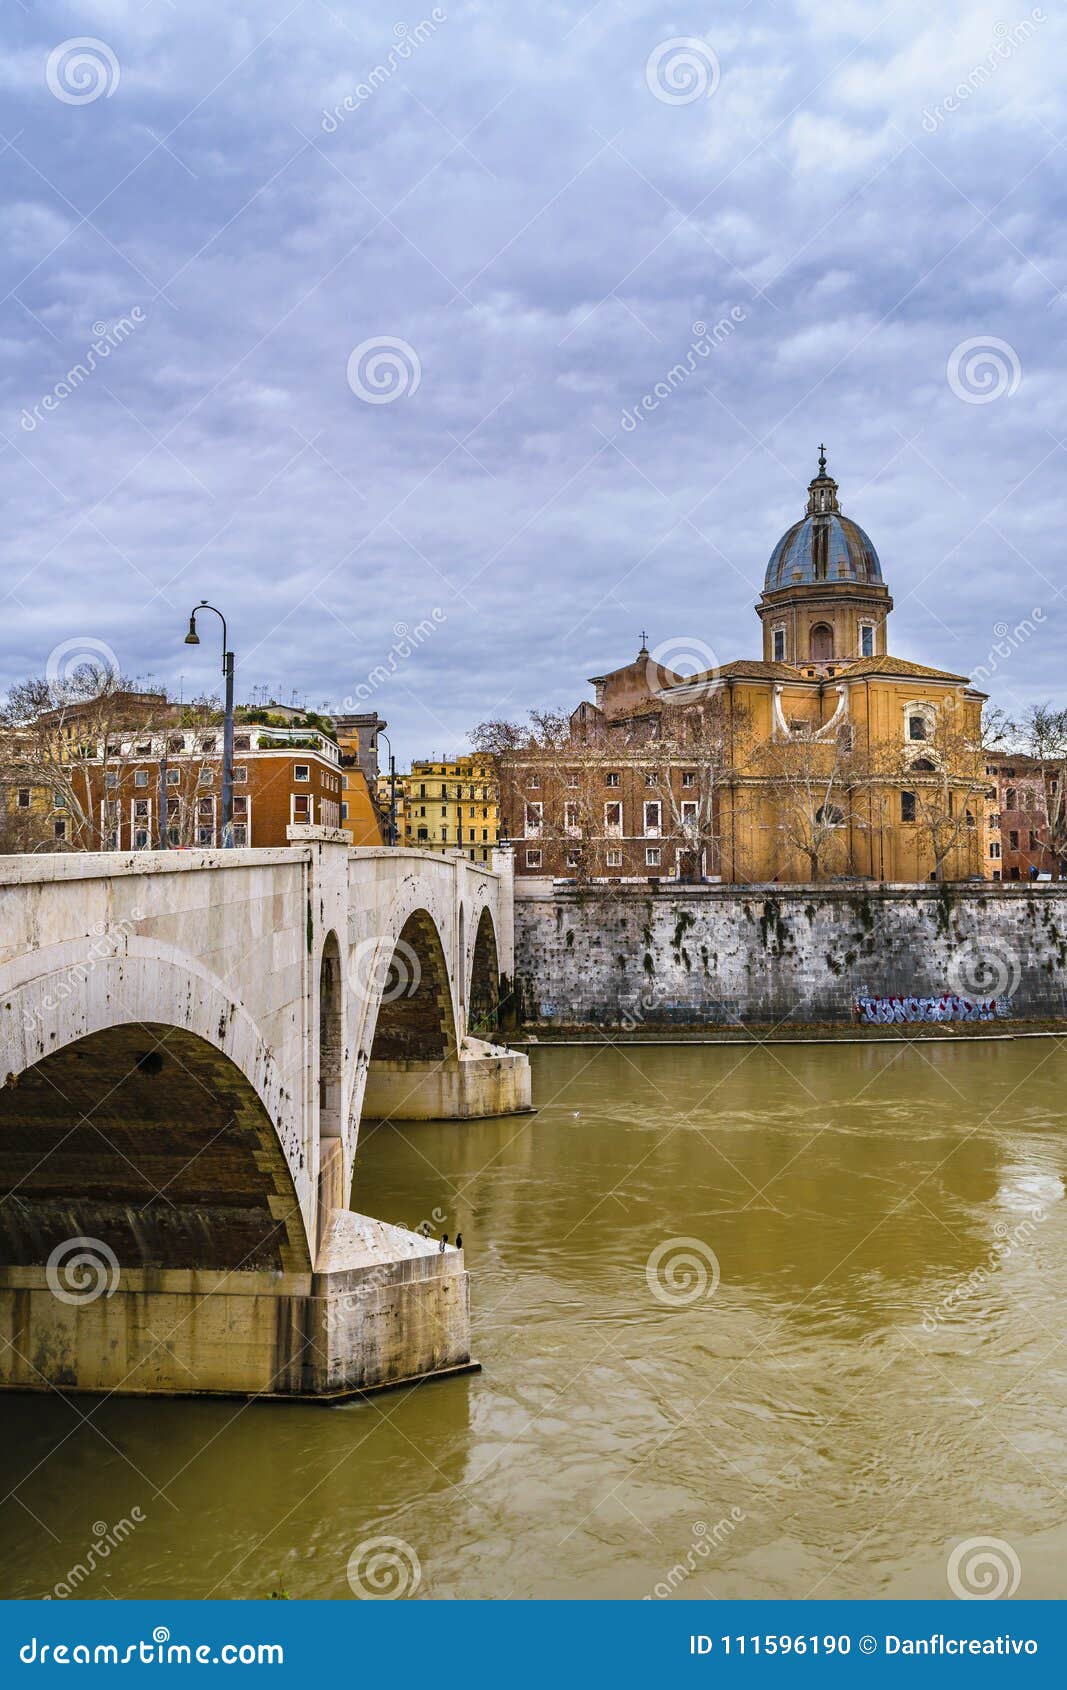 tiber river rome cityscape